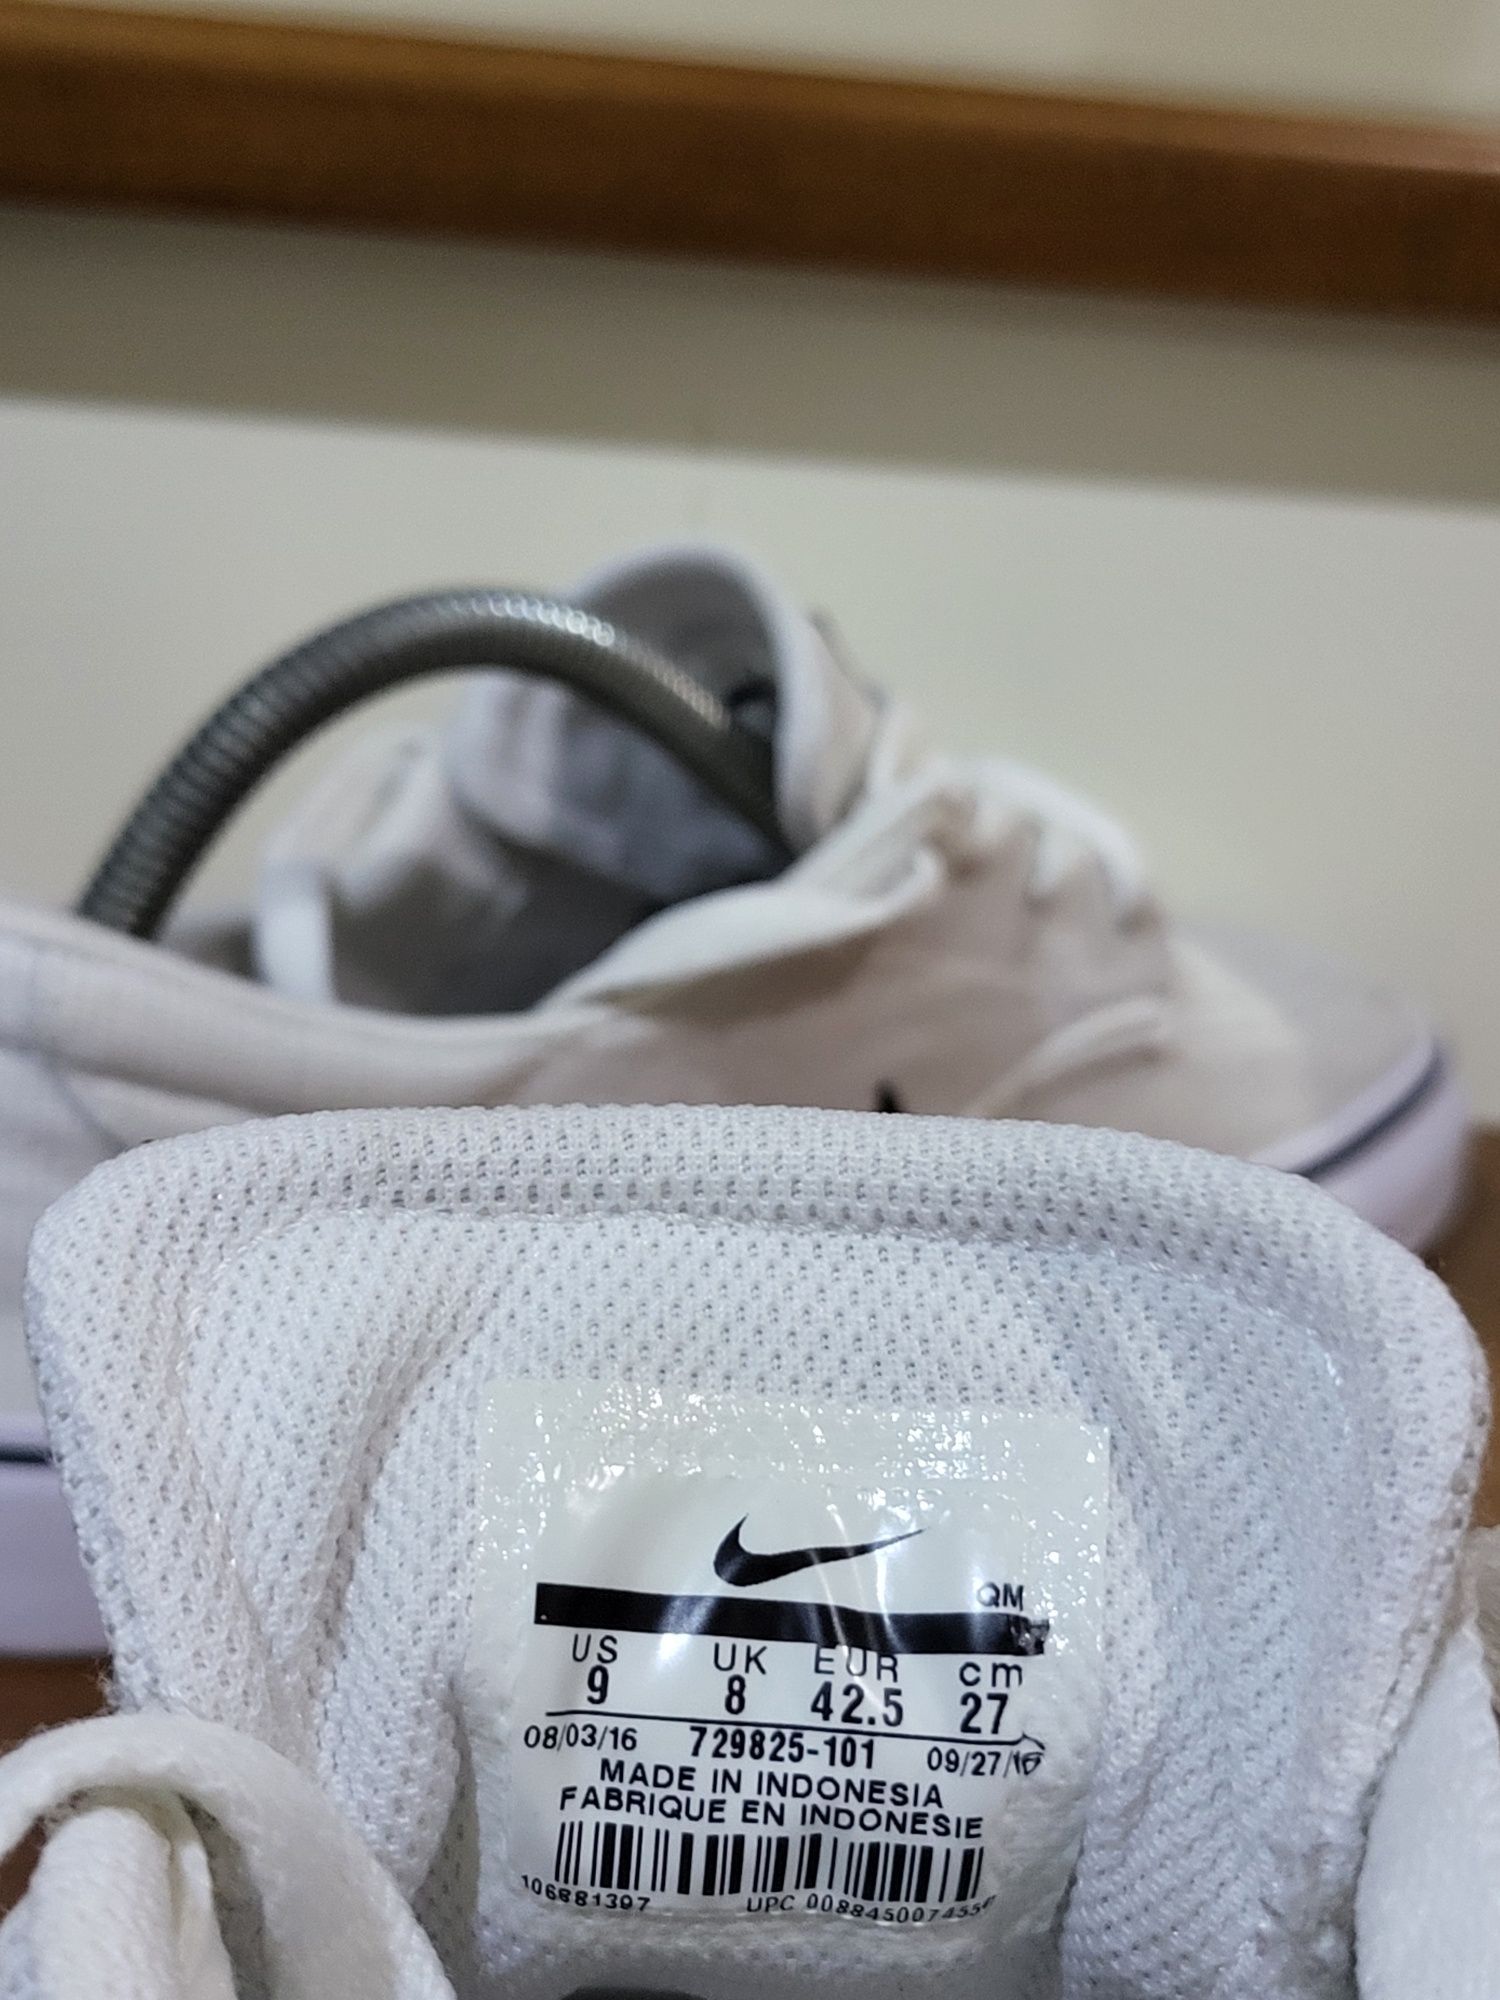 Adidasi Nike SB 42.5